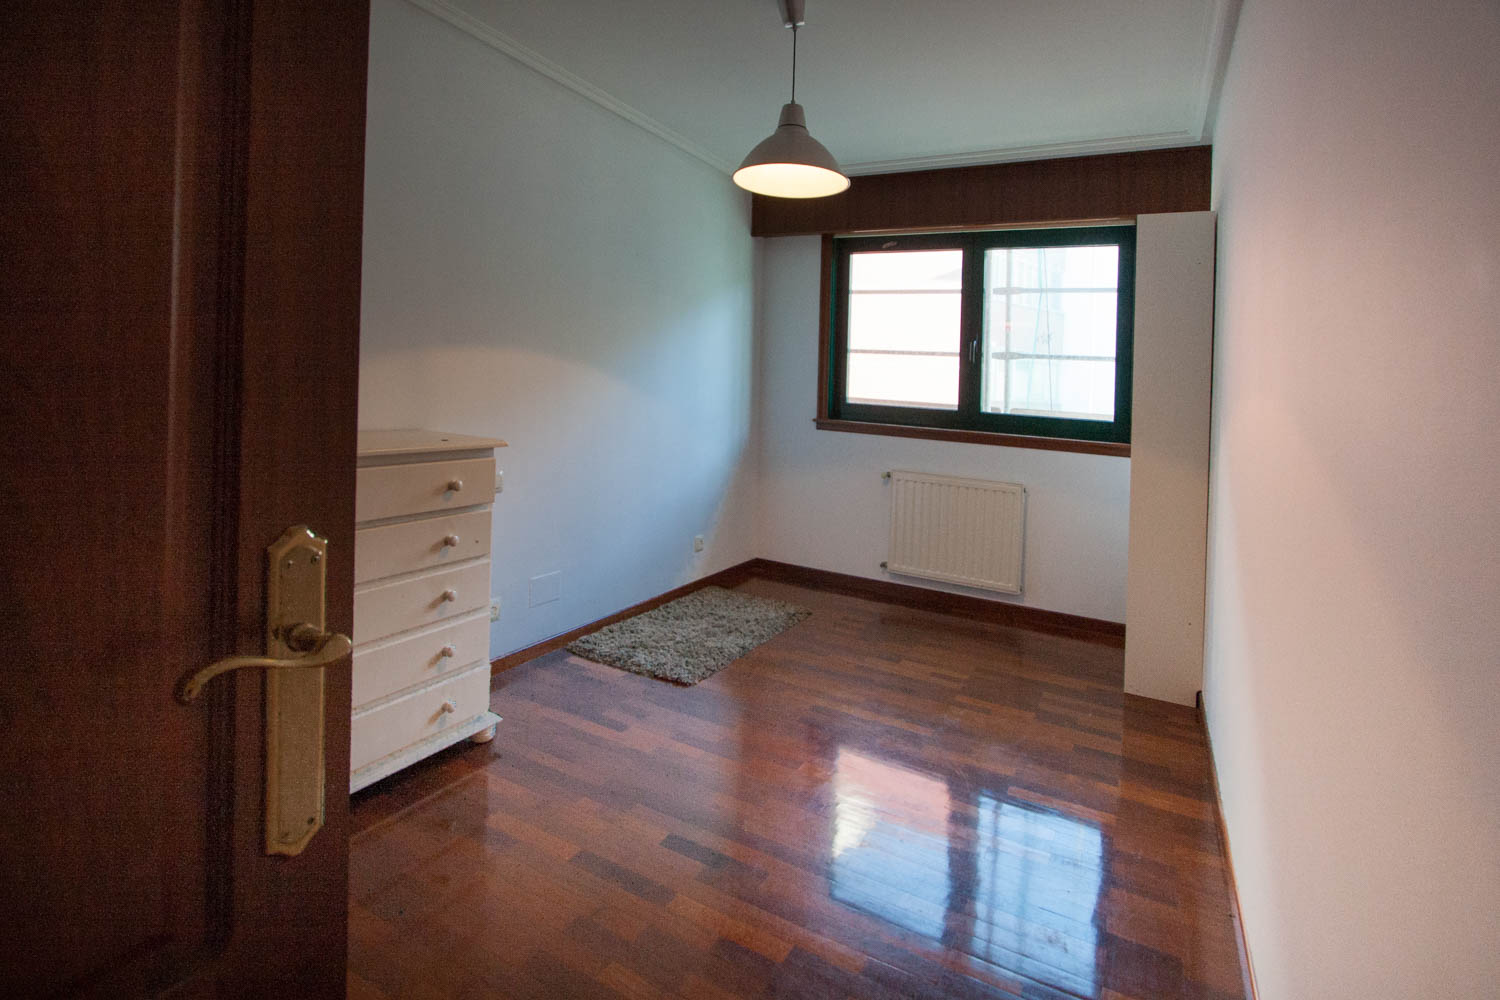 Dormitorio vacío previo al Home Staging en piso Sada_ cómoda blanca y estantería